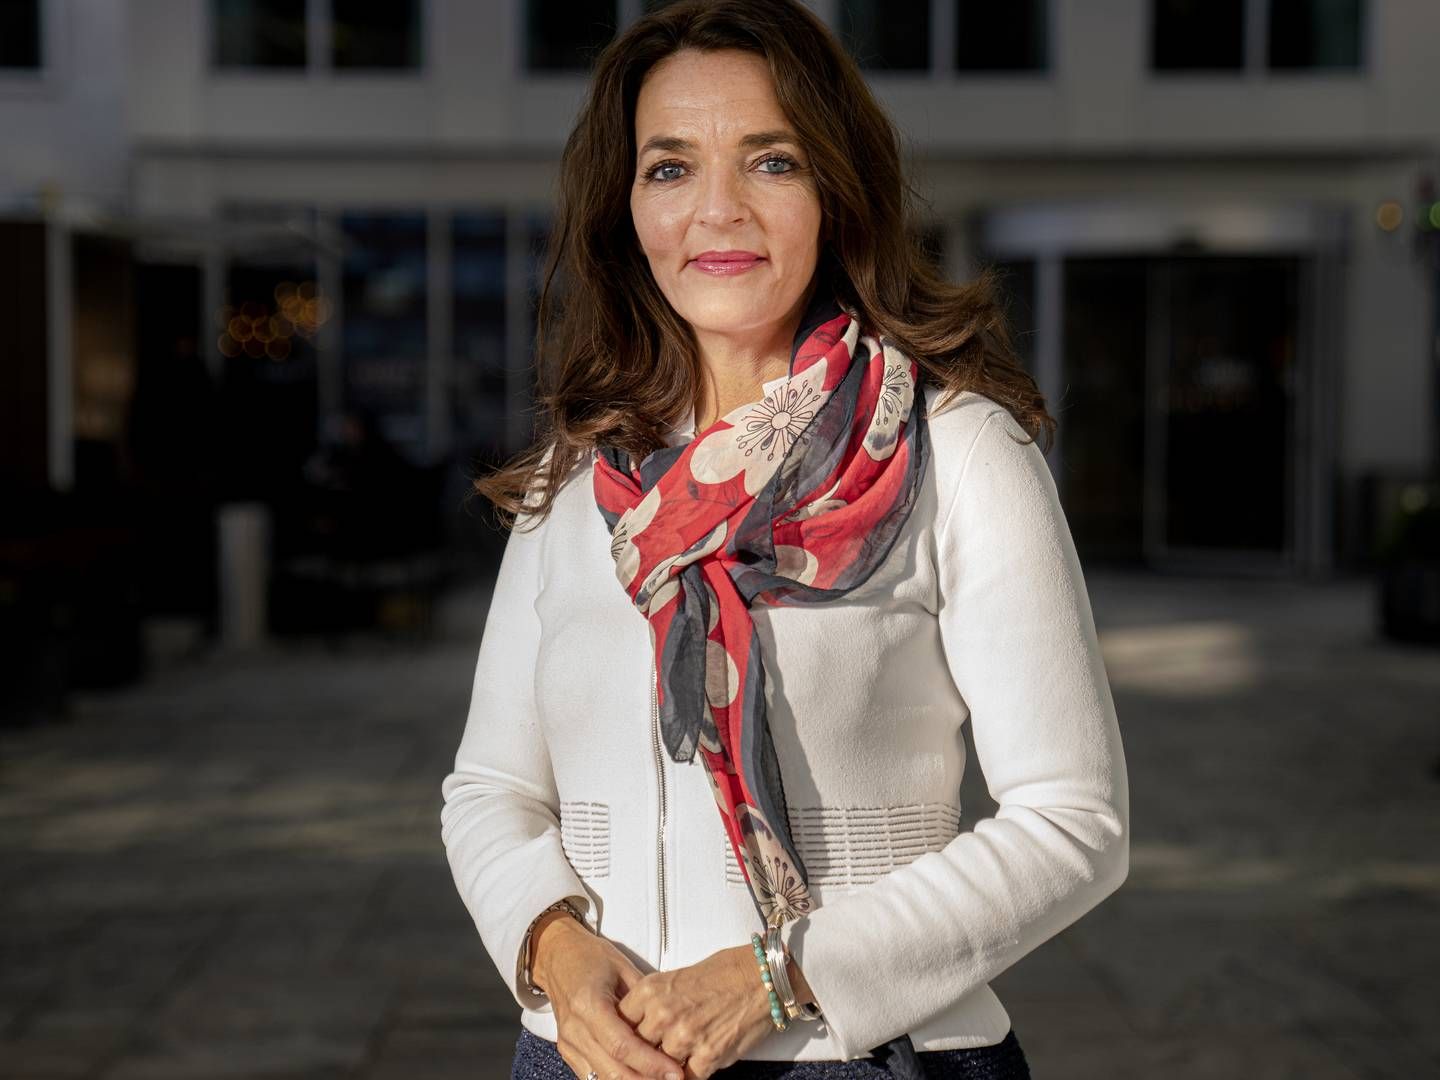 Hos arbejdsgiverorganisationen Horesta bekræfter direktør Katia Østergaard, at parterne er gået fra hinanden lørdag. | Foto: Stine Bidstrup/ERH